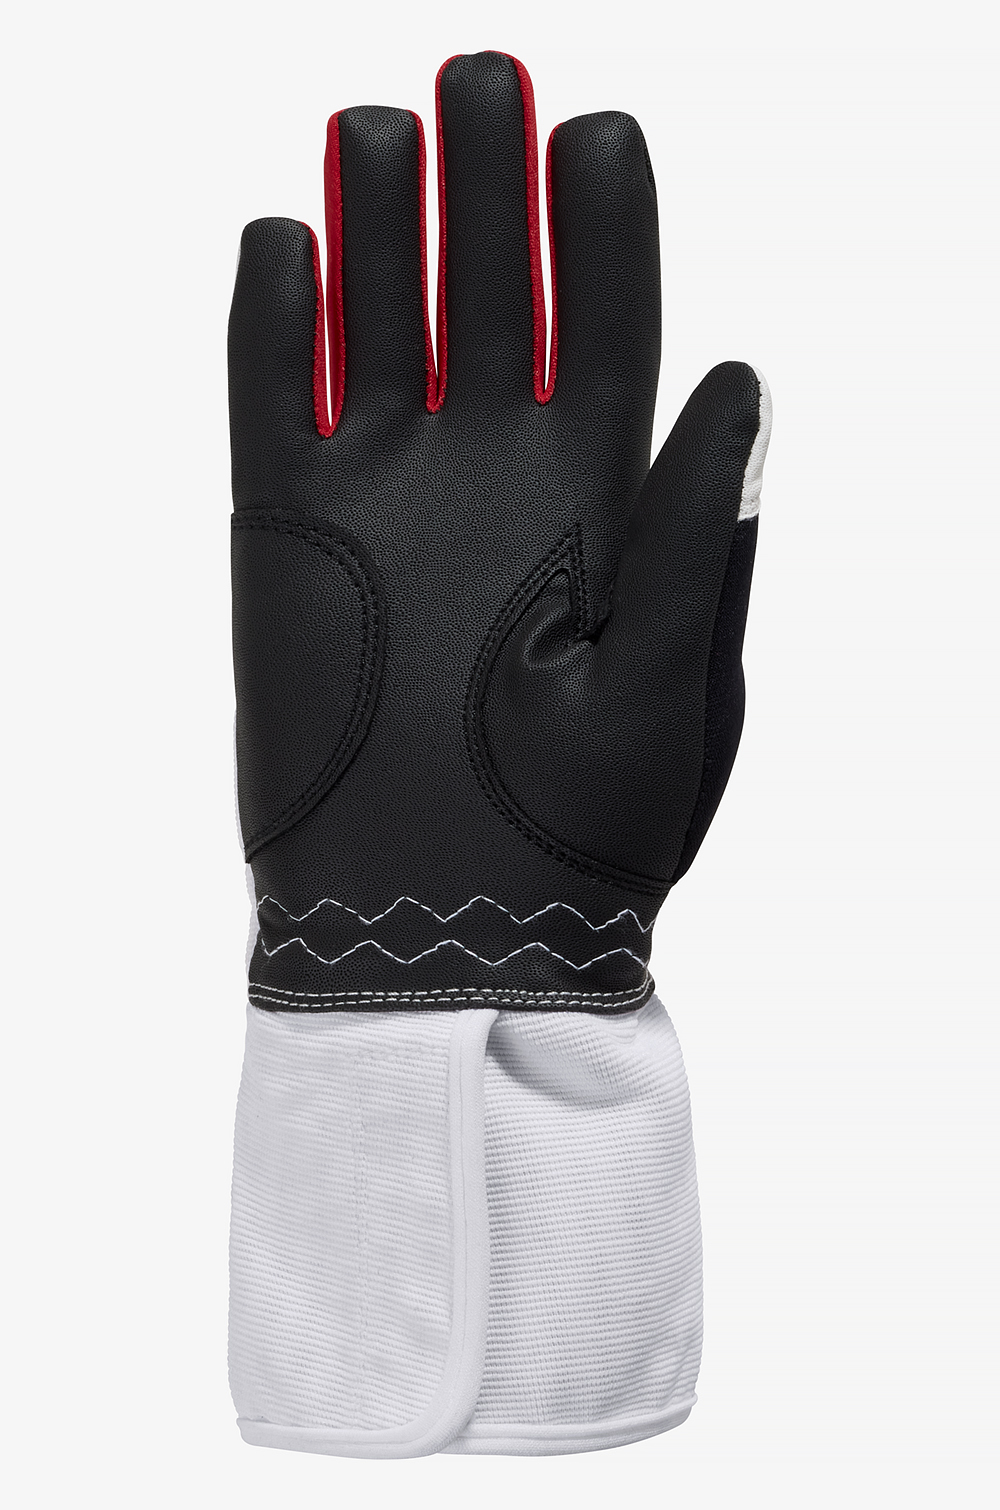 Agility-X Junior Glove